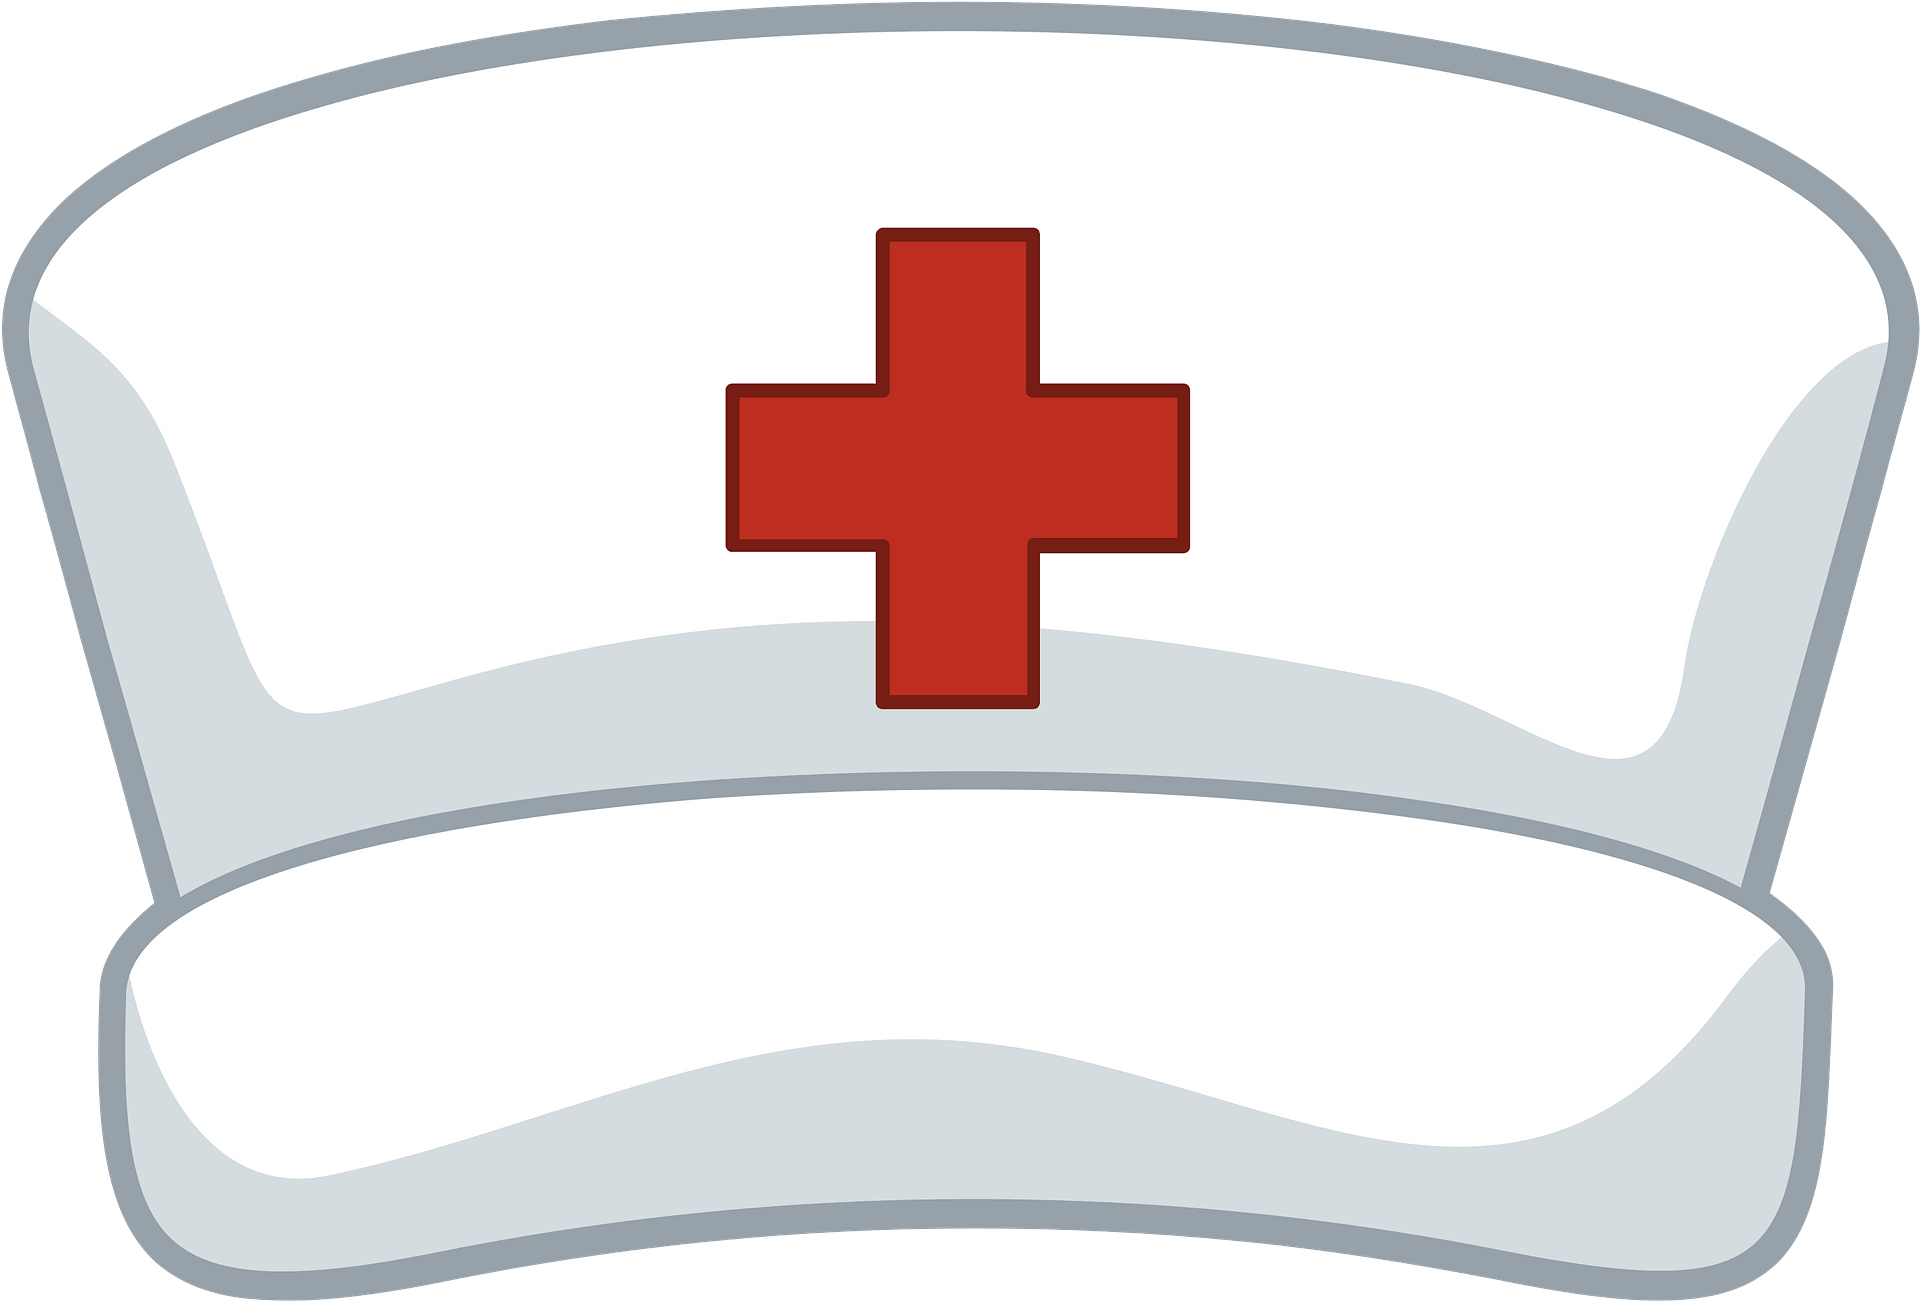 Dr hat. Шапка медсестры для детей. Медицинский колпак с красным крестом. Медицинская шапочка с красным крестом. Шапка врача для детей.